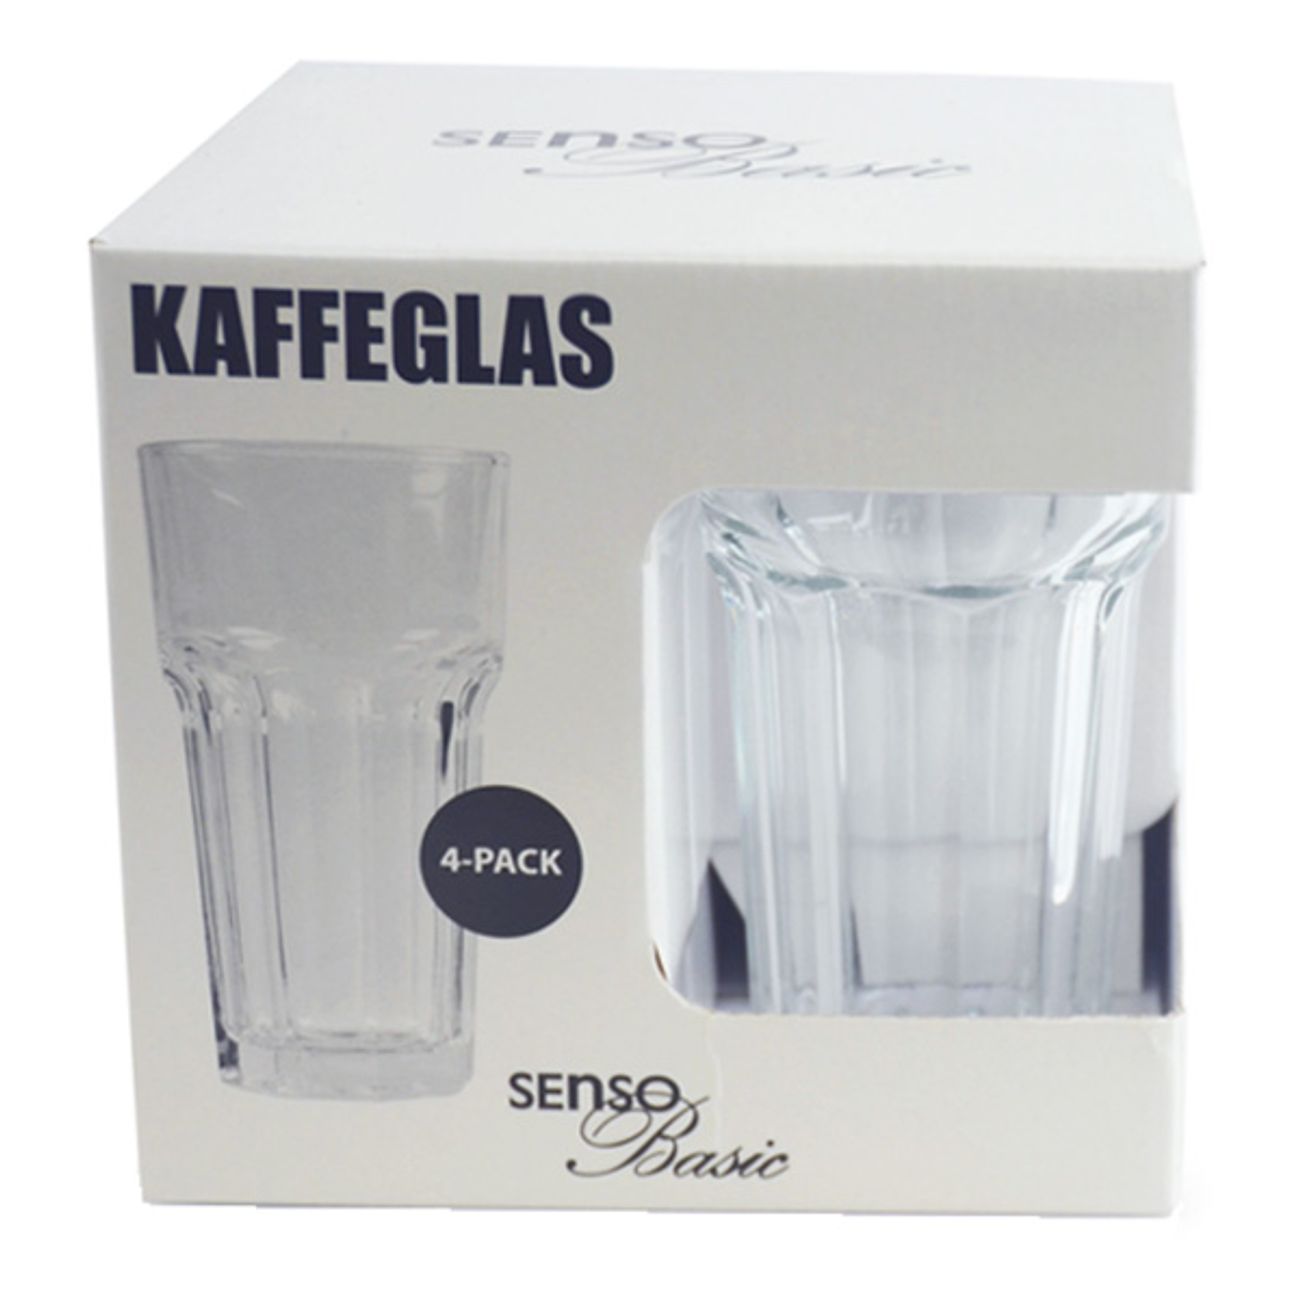 senso-basic-kaffeglas-2